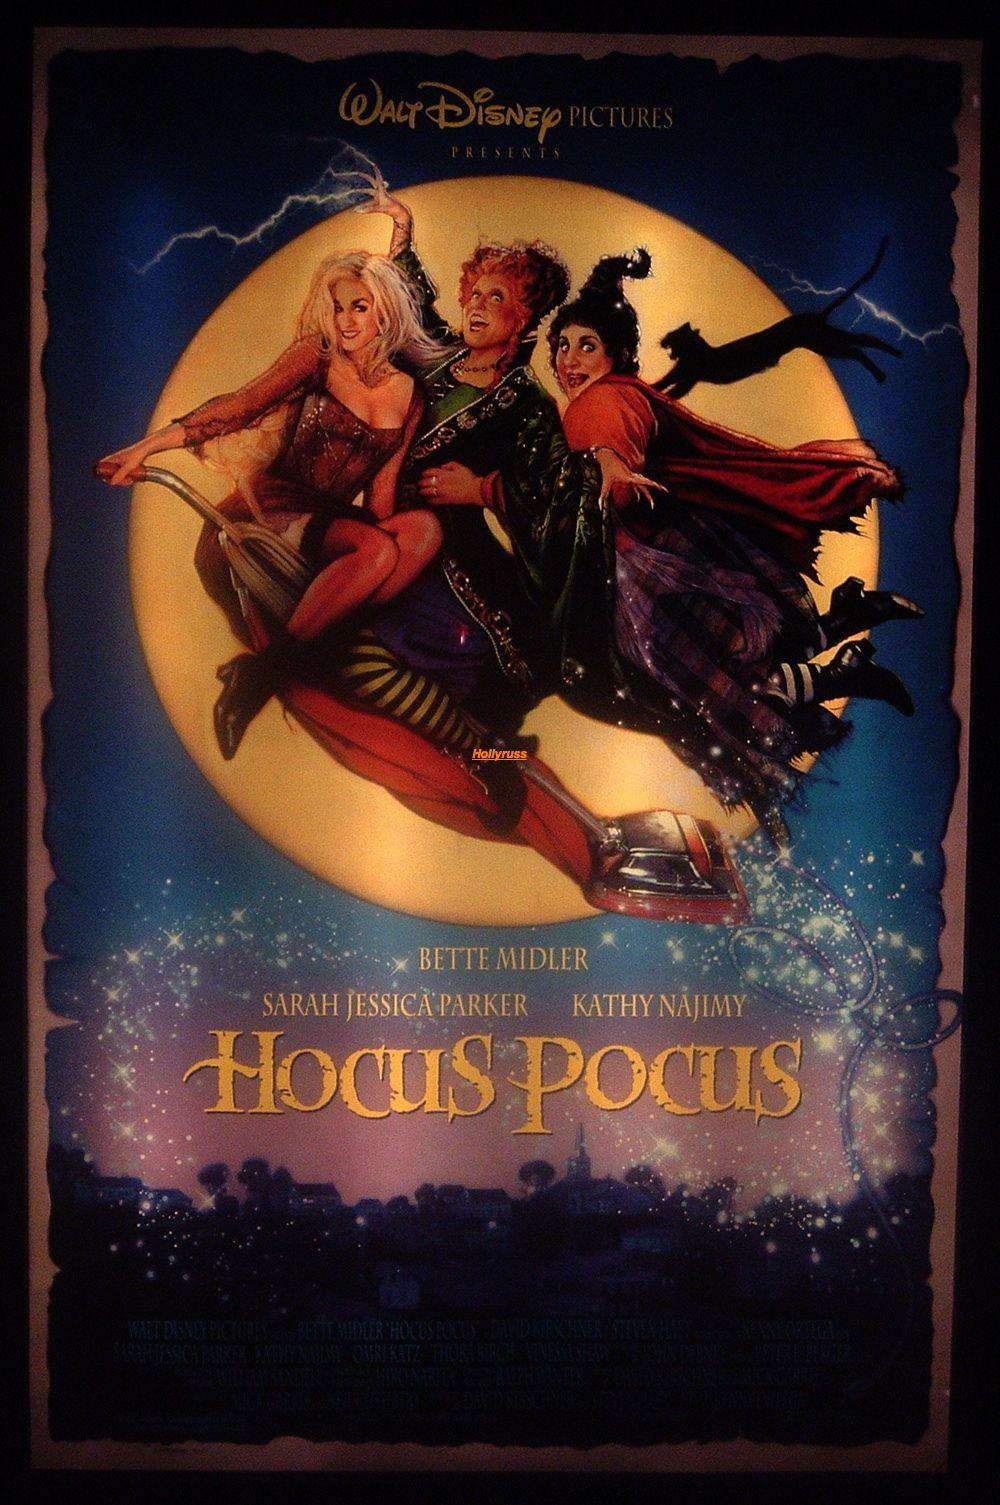 Hocus Pocus image Hocus Pocus HD wallpaper and background photo